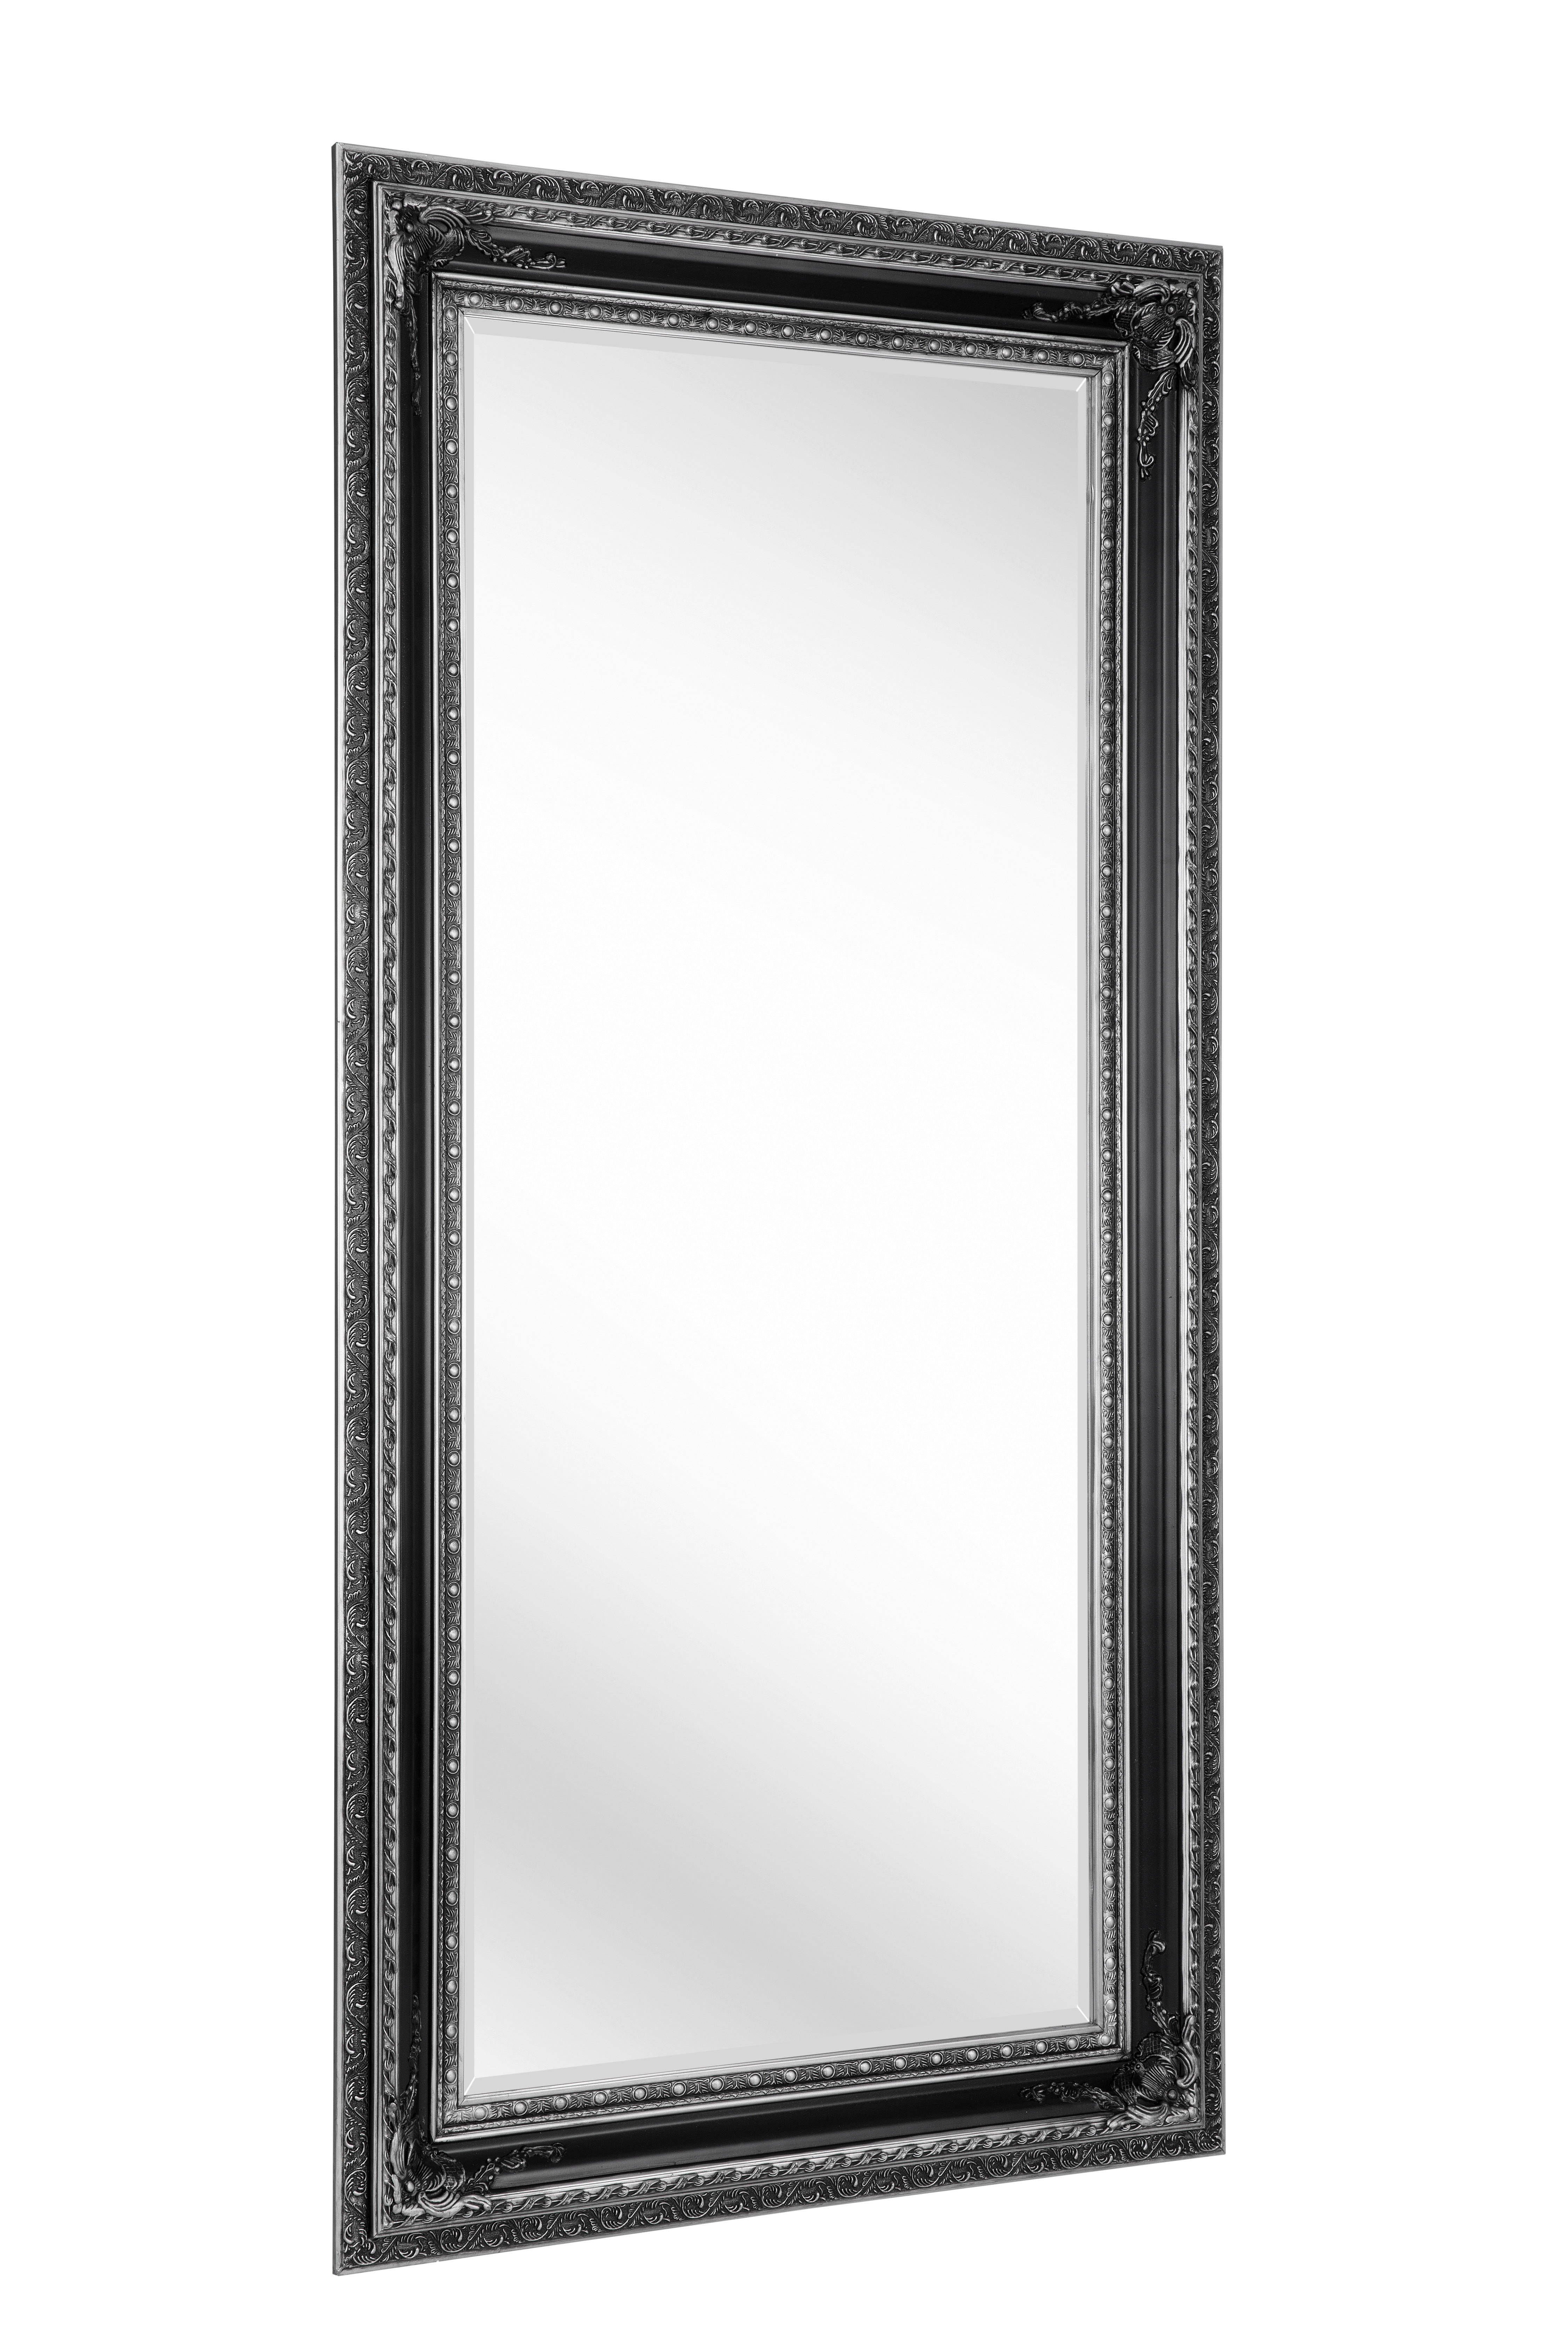 WANDSPIEGEL Silberfarben  - Silberfarben, LIFESTYLE, Glas/Holz (100/200/6cm) - Carryhome